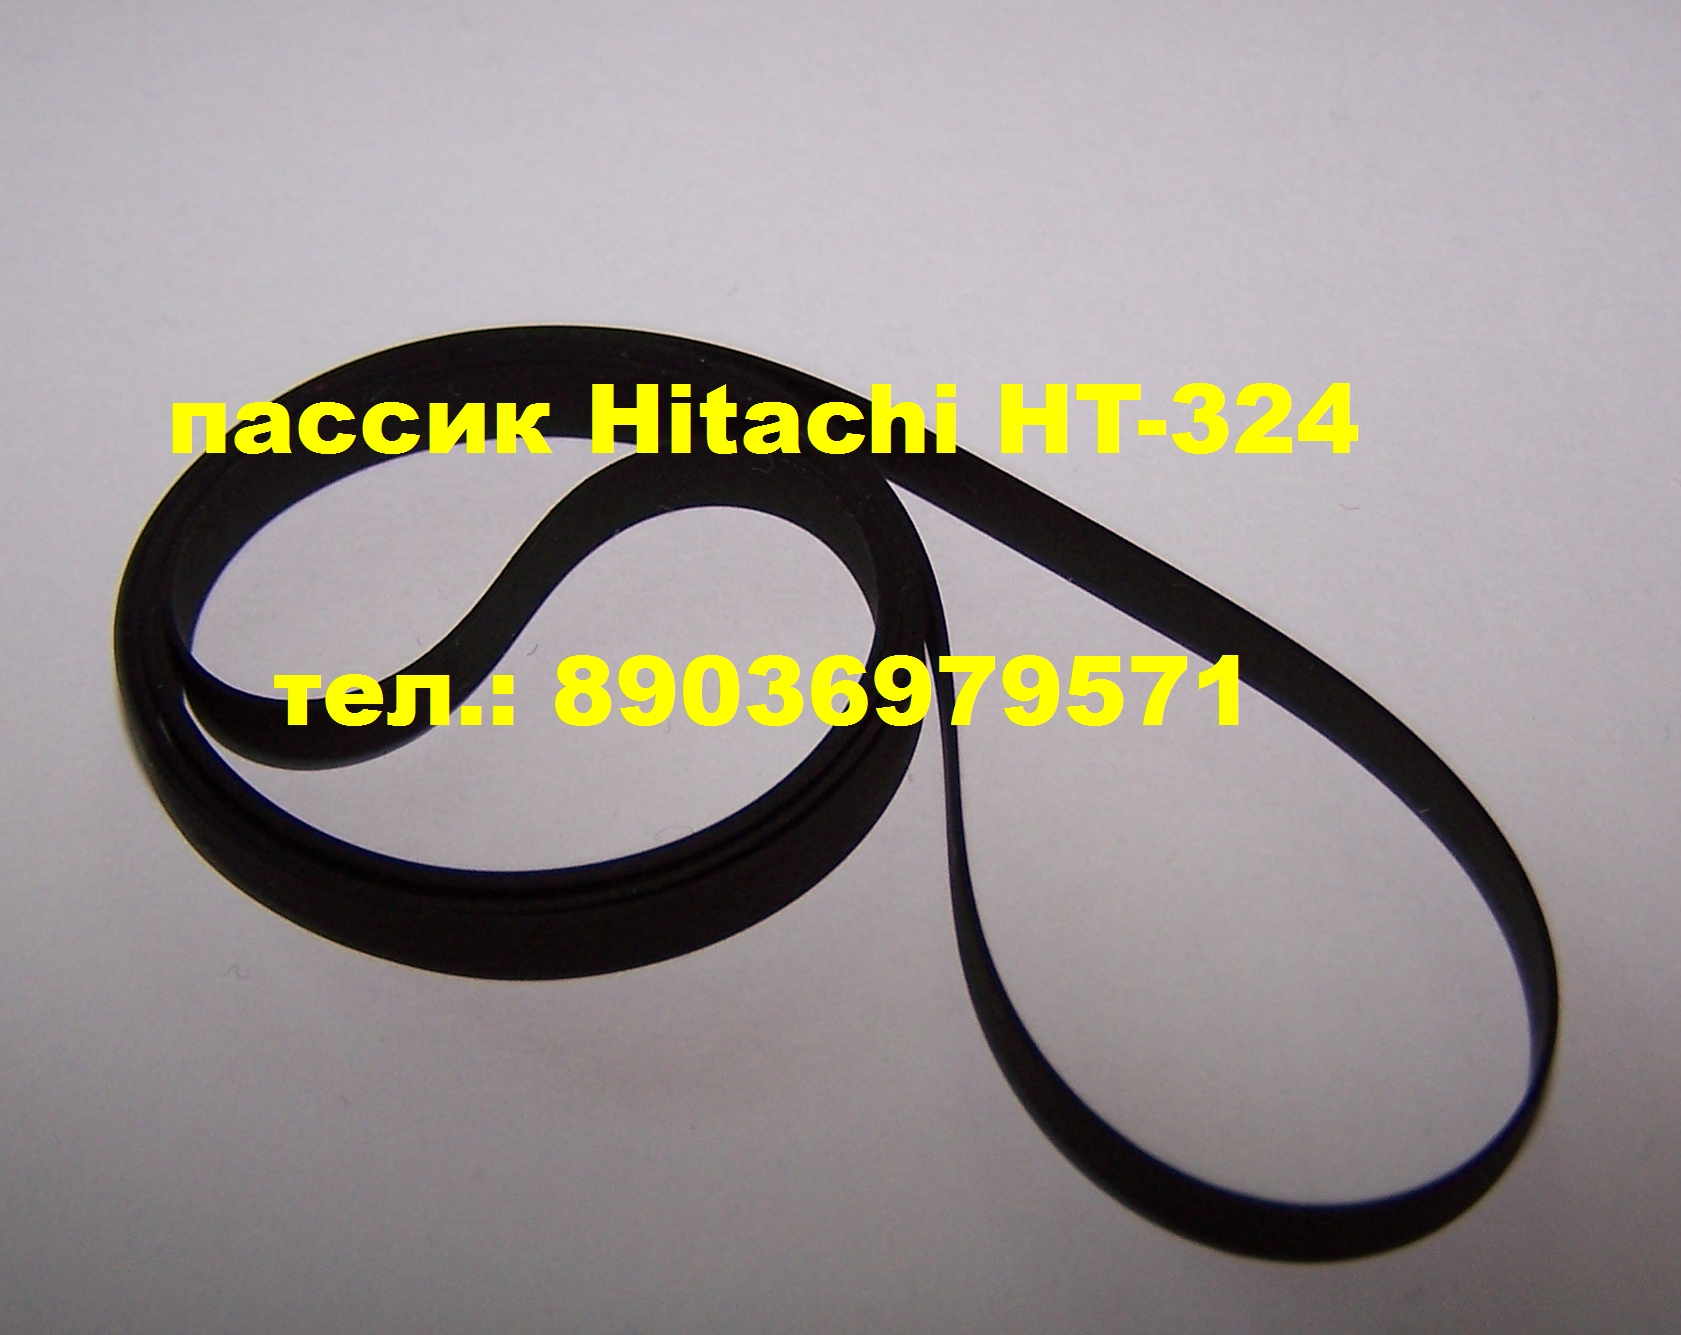 Hitachi HT-324 новый пассик для вертушки Хитачи в городе Москва, фото 1, телефон продавца: +7 (903) 697-95-71